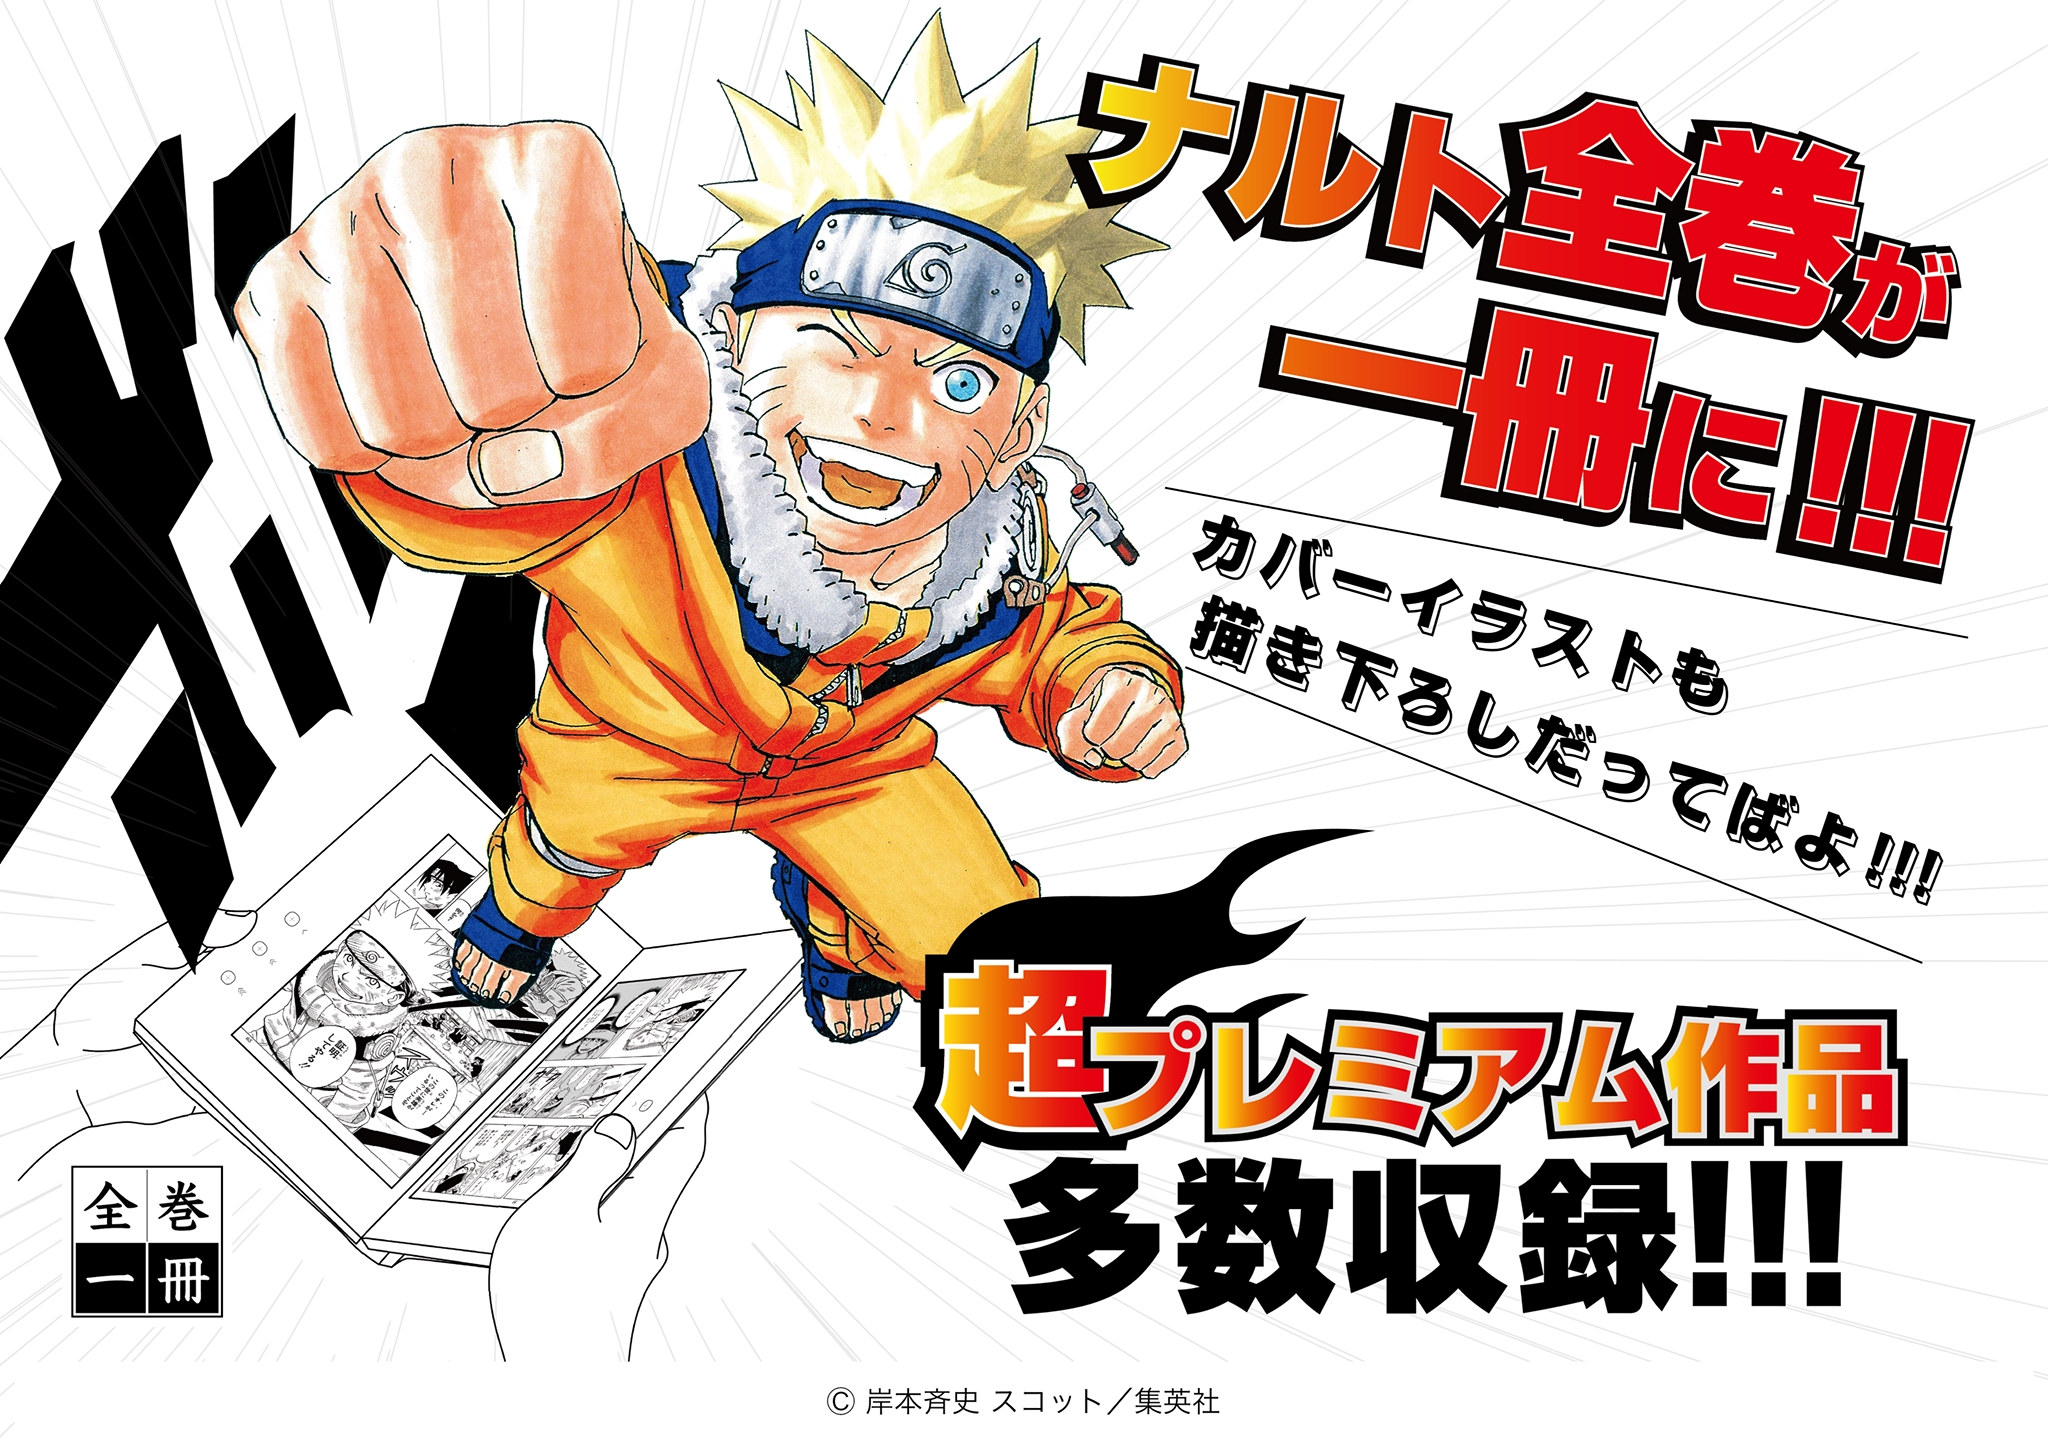 大好評 全巻一冊シリーズに Naruto ナルト プログレス テクノロジーズ株式会社のプレスリリース